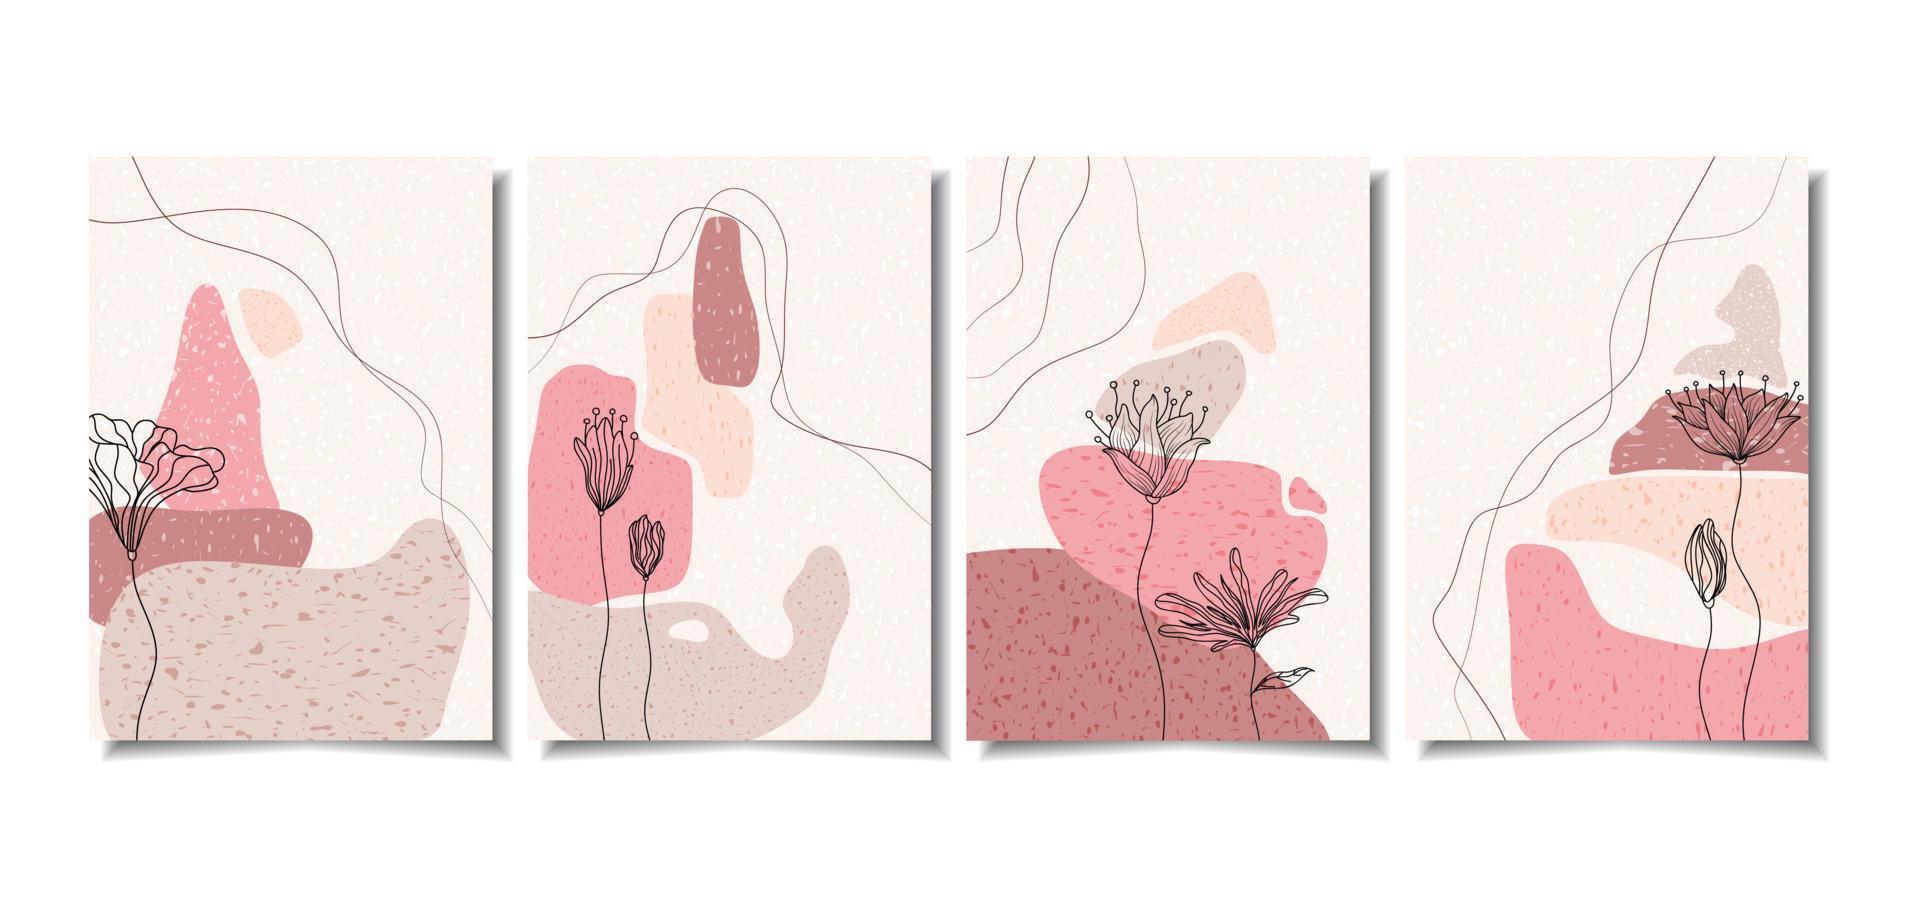 botanische muur kunst vector set. gebladerte lijntekeningen tekenen met abstracte vorm. abstract plant art design voor print, cover, behang, minimale en natuurlijke kunst aan de muur. vectorillustratie.